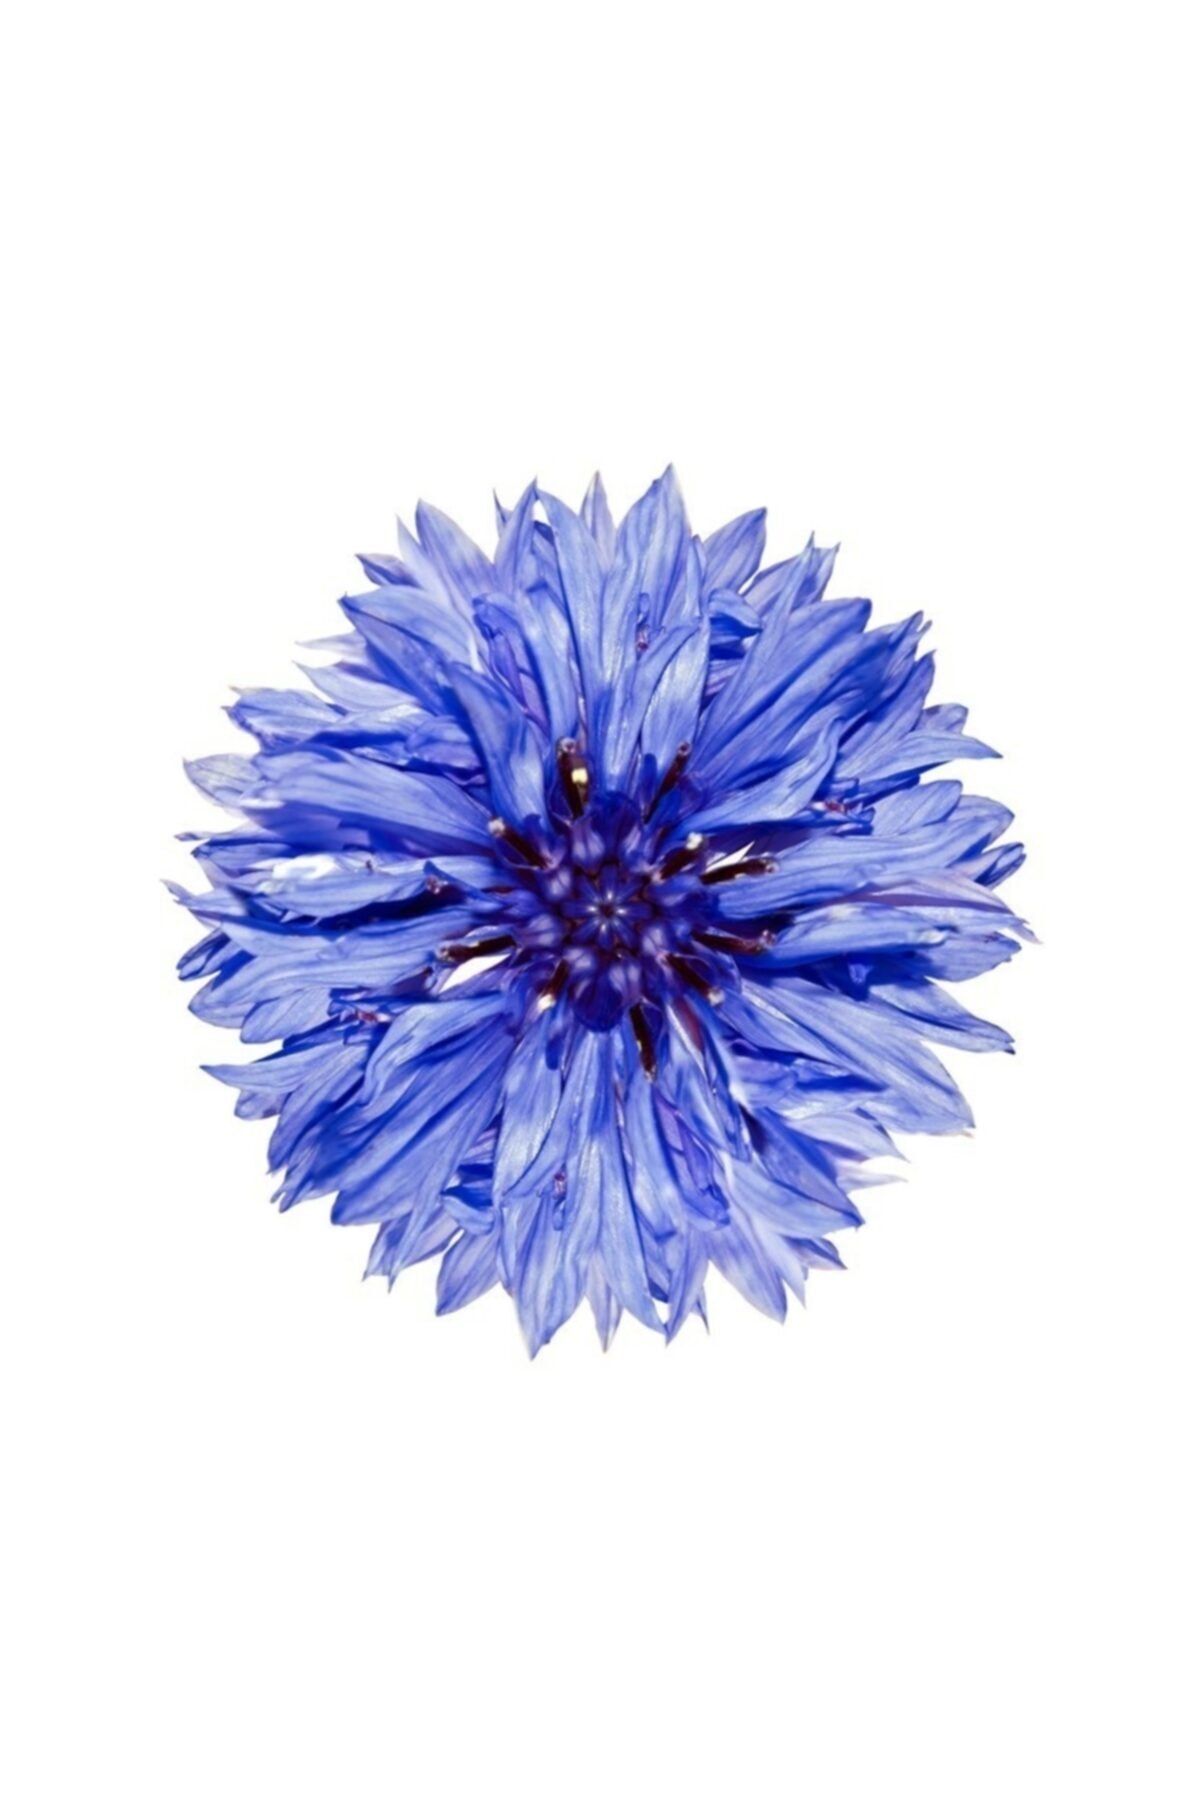 Serdar Çam Tohumculuk Mavi Kantoron Çiçeği Tohumu 5 Adet Tohum Çiçek Tohumu Kantaron